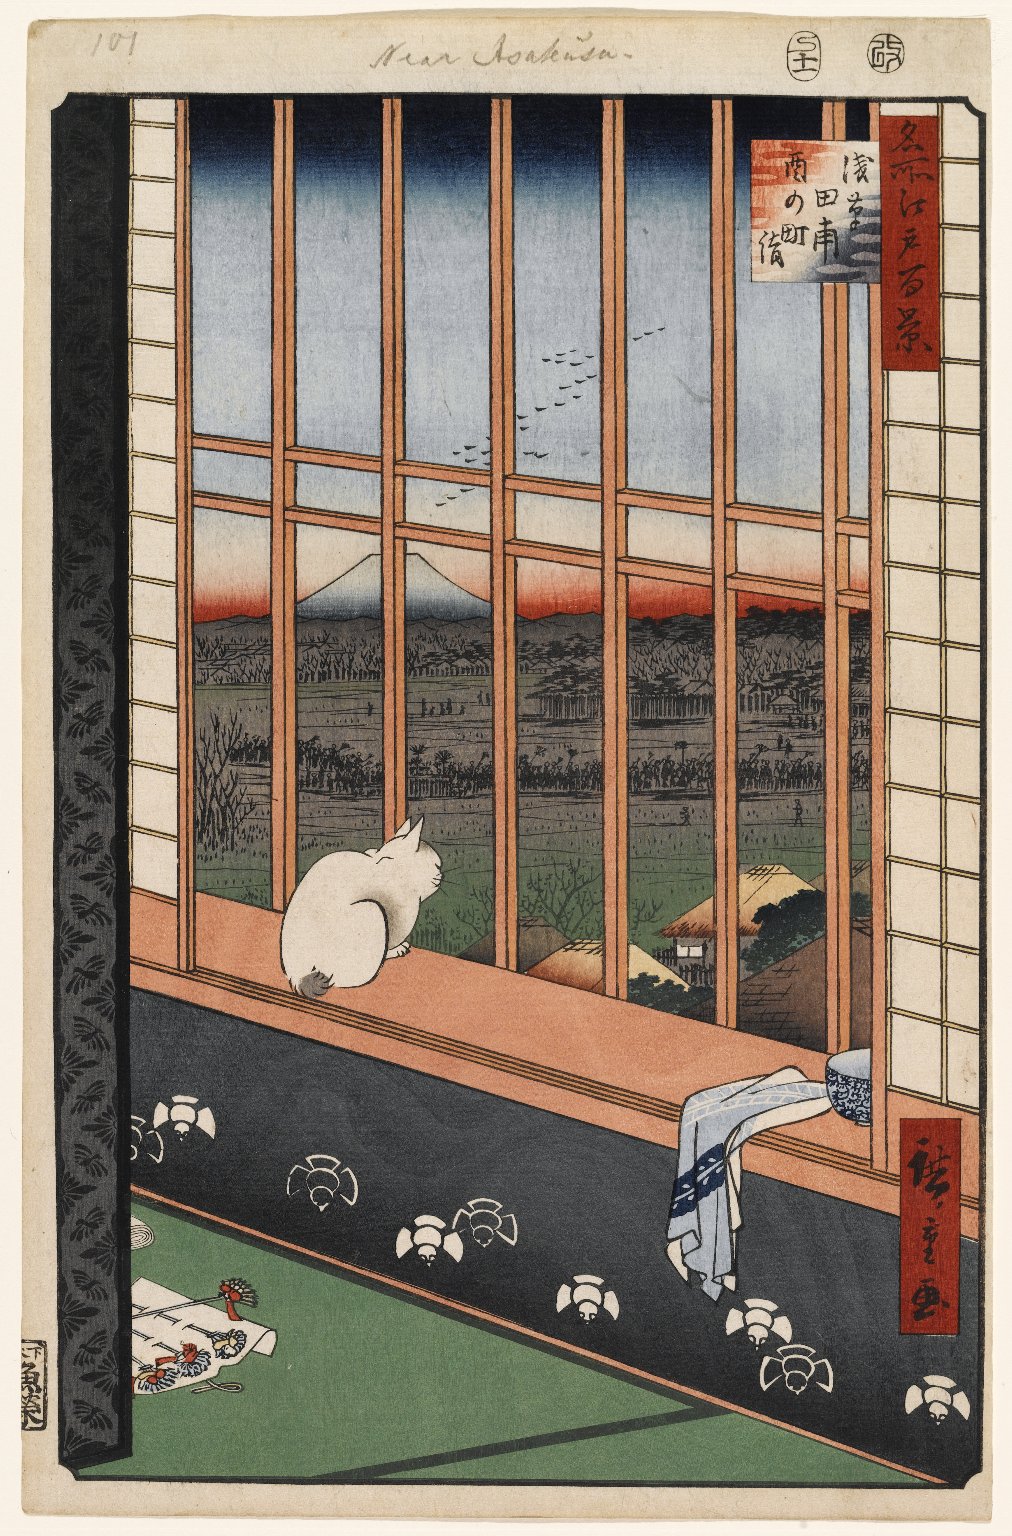 淺草稻田和都靈町節，101號 by  Hiroshige - 1857年 - 36 x 23.5 cm 